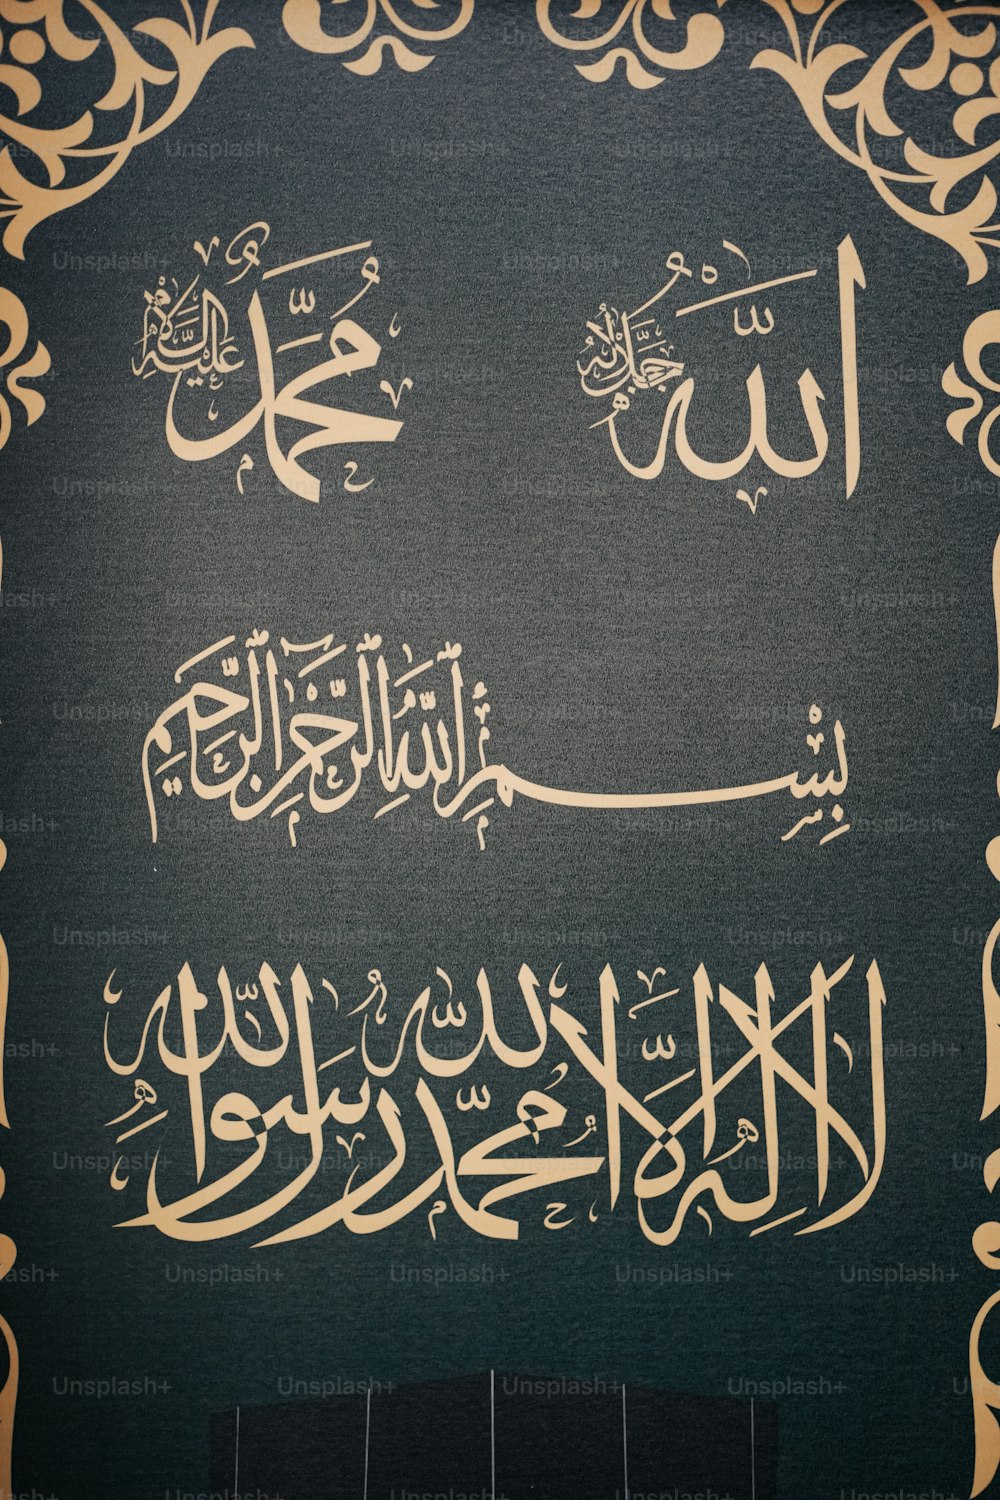 Une image d’écriture arabe sur un mur